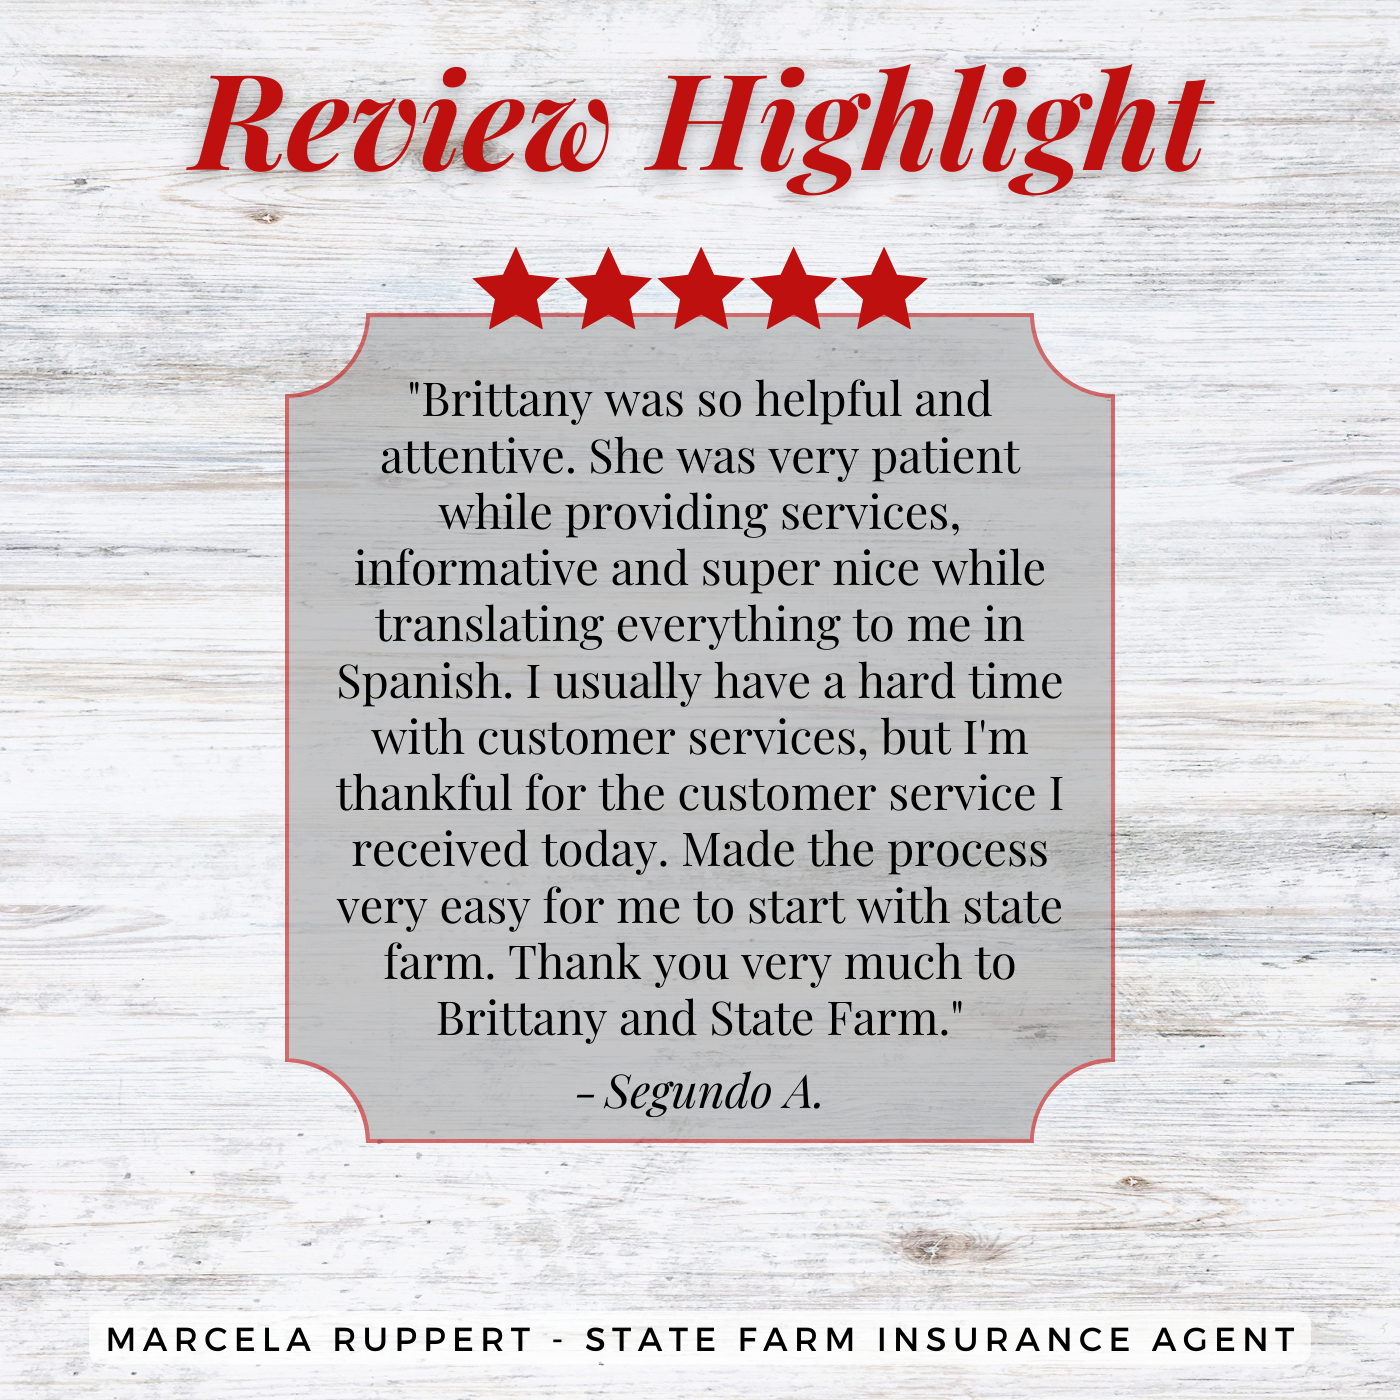 Marcela Ruppert - State Farm Insurance Agent